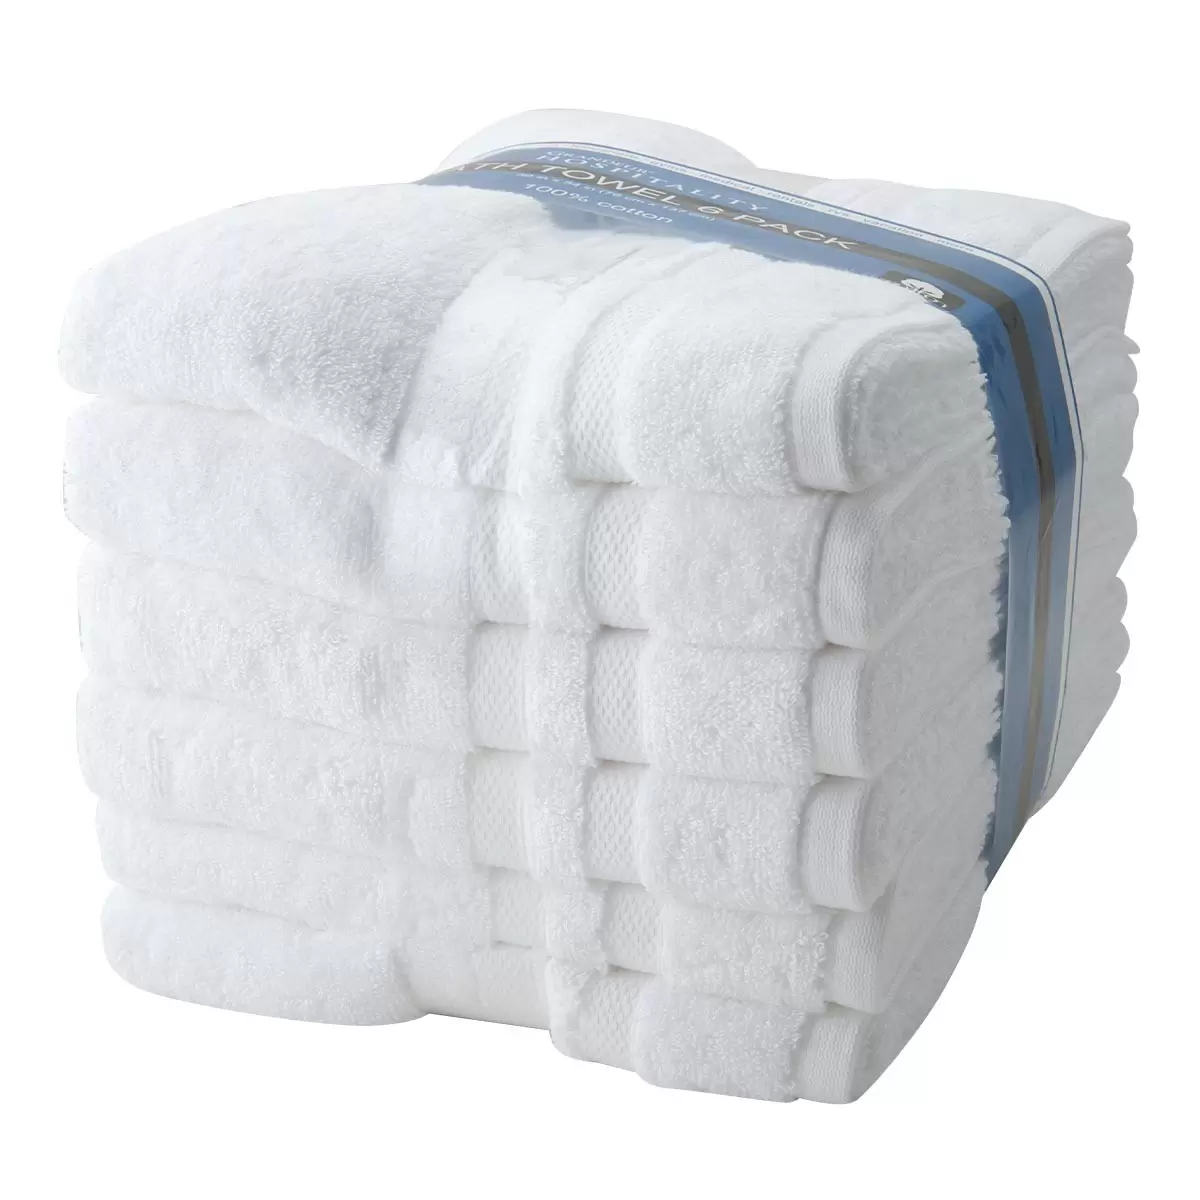 Grandeur 商用純棉大浴巾 76公分 X 137公分 X 60組 (每組 6入)